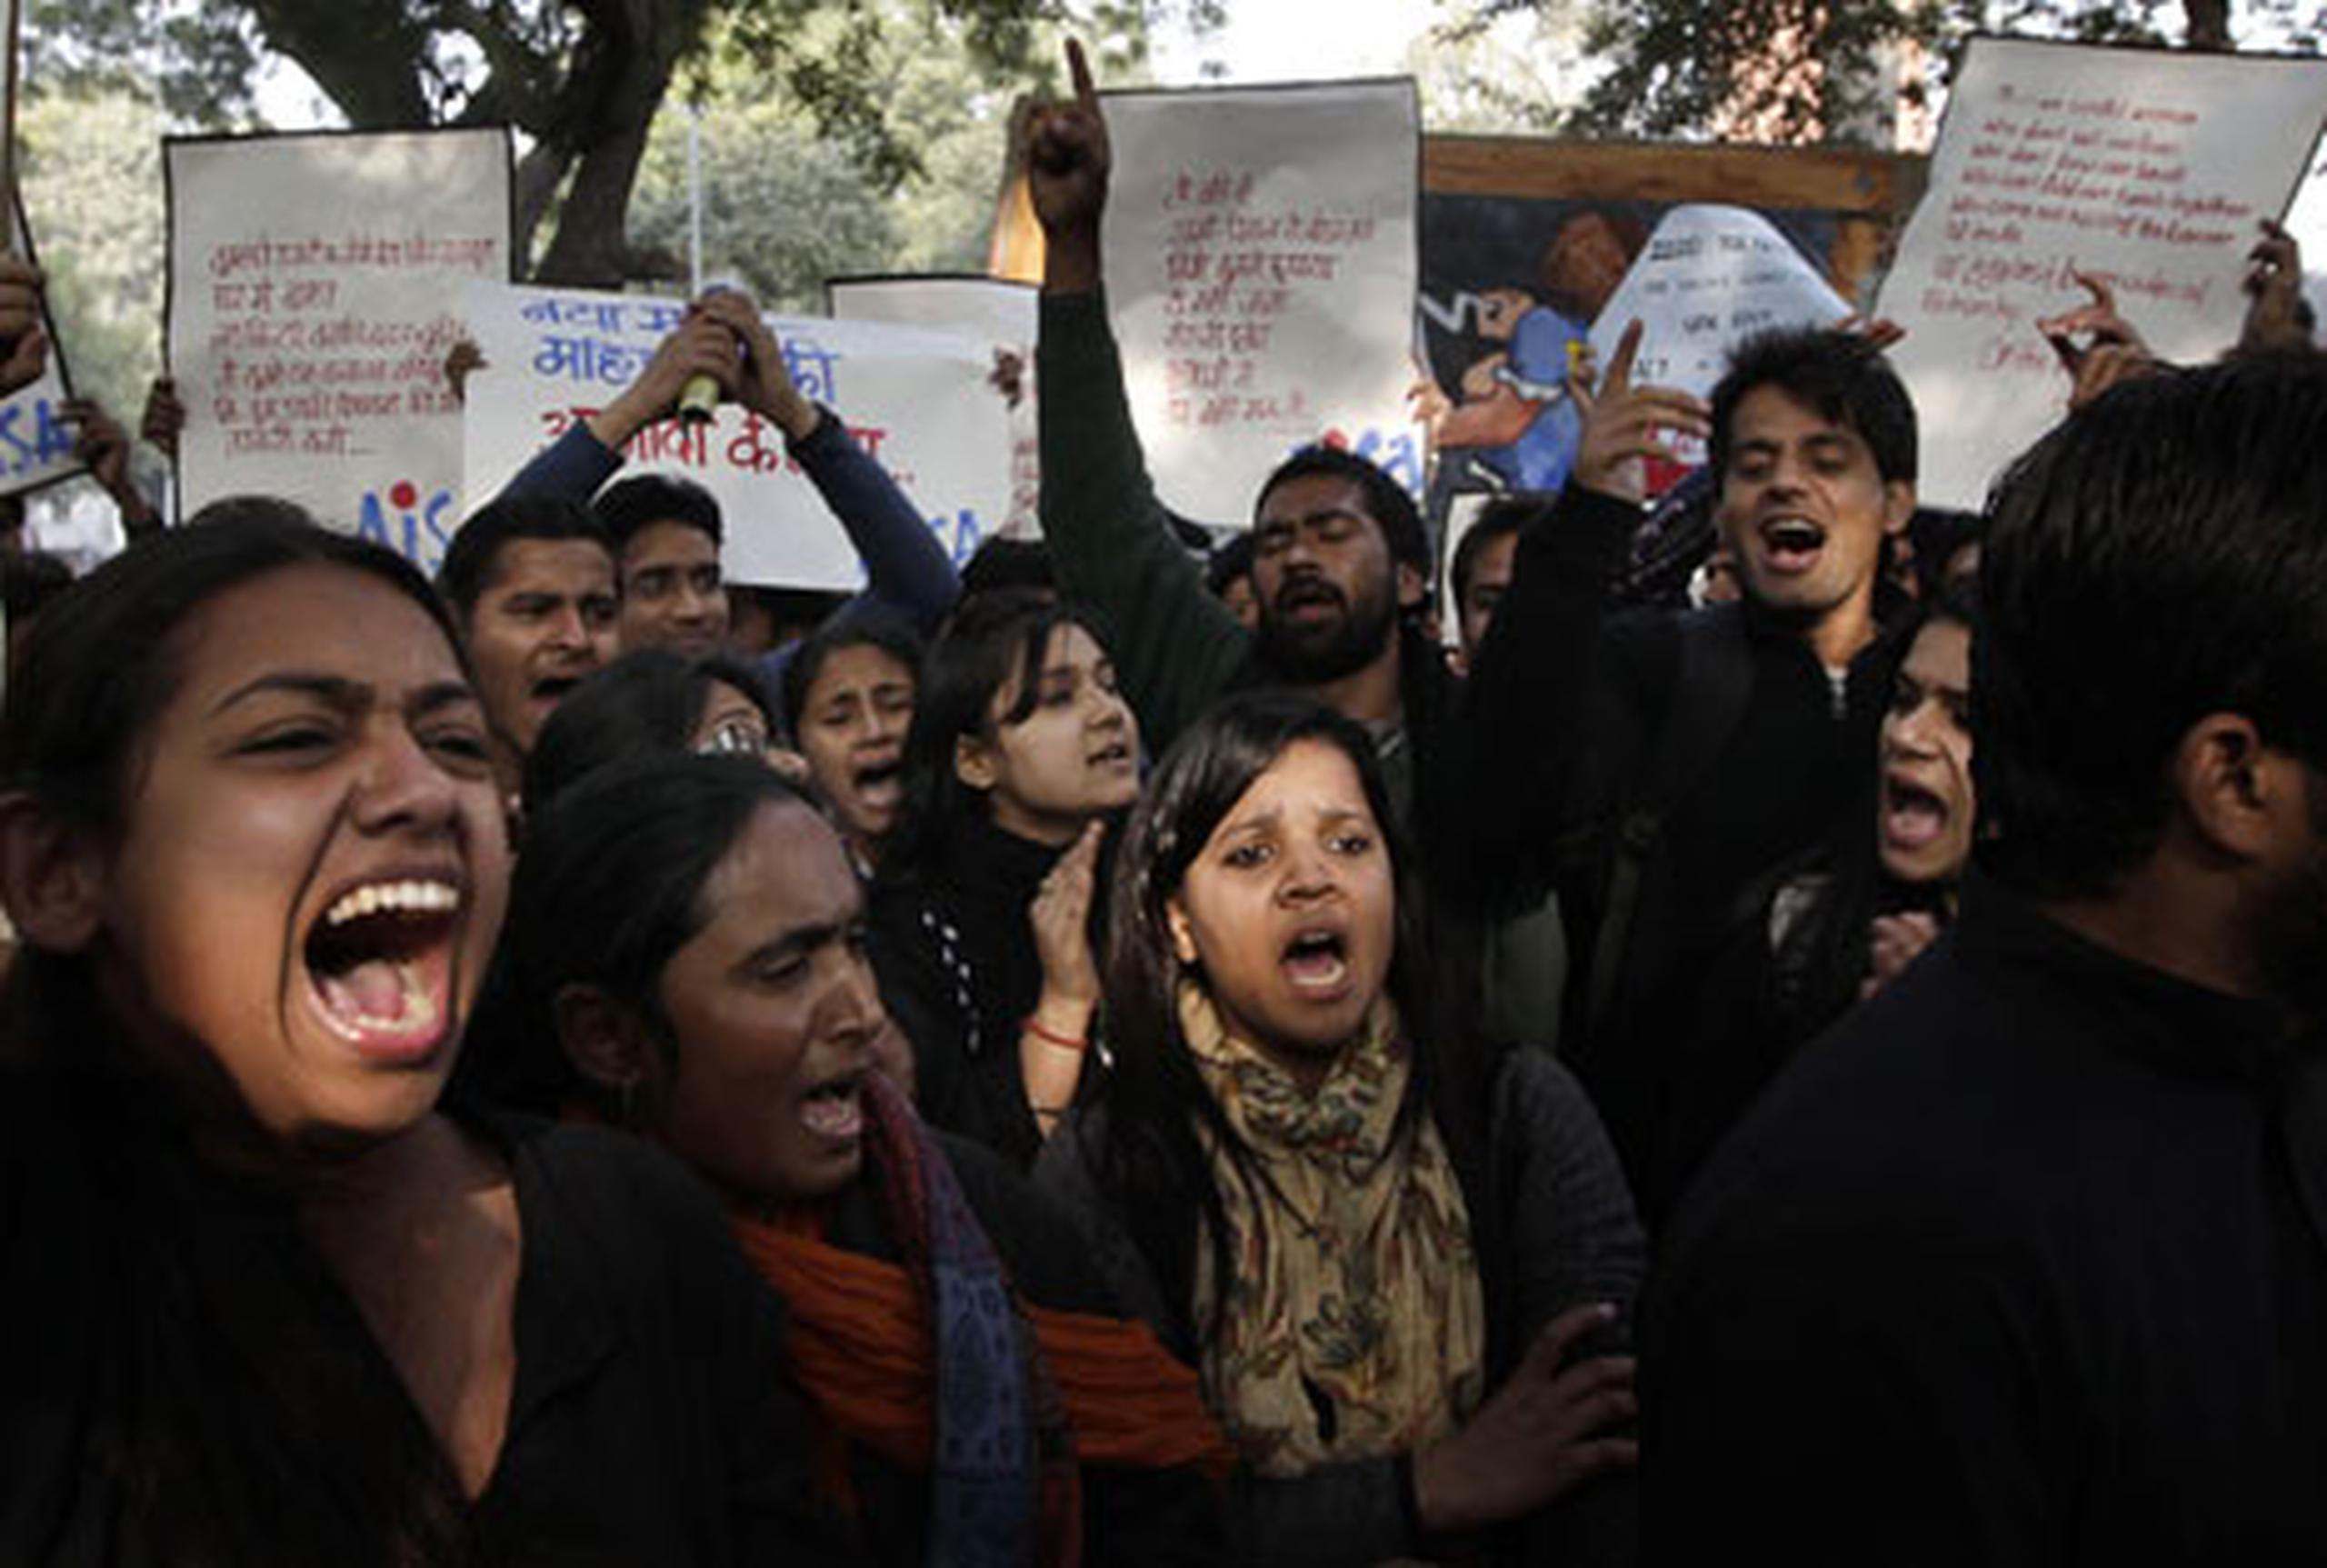 El "manifestódromo" de Jantar Mantar se erigió un día más en el lugar elegido por los grupos de indignados para recordar a la chica violada y reclamar medidas contra los asaltos sexuales. (EFE)